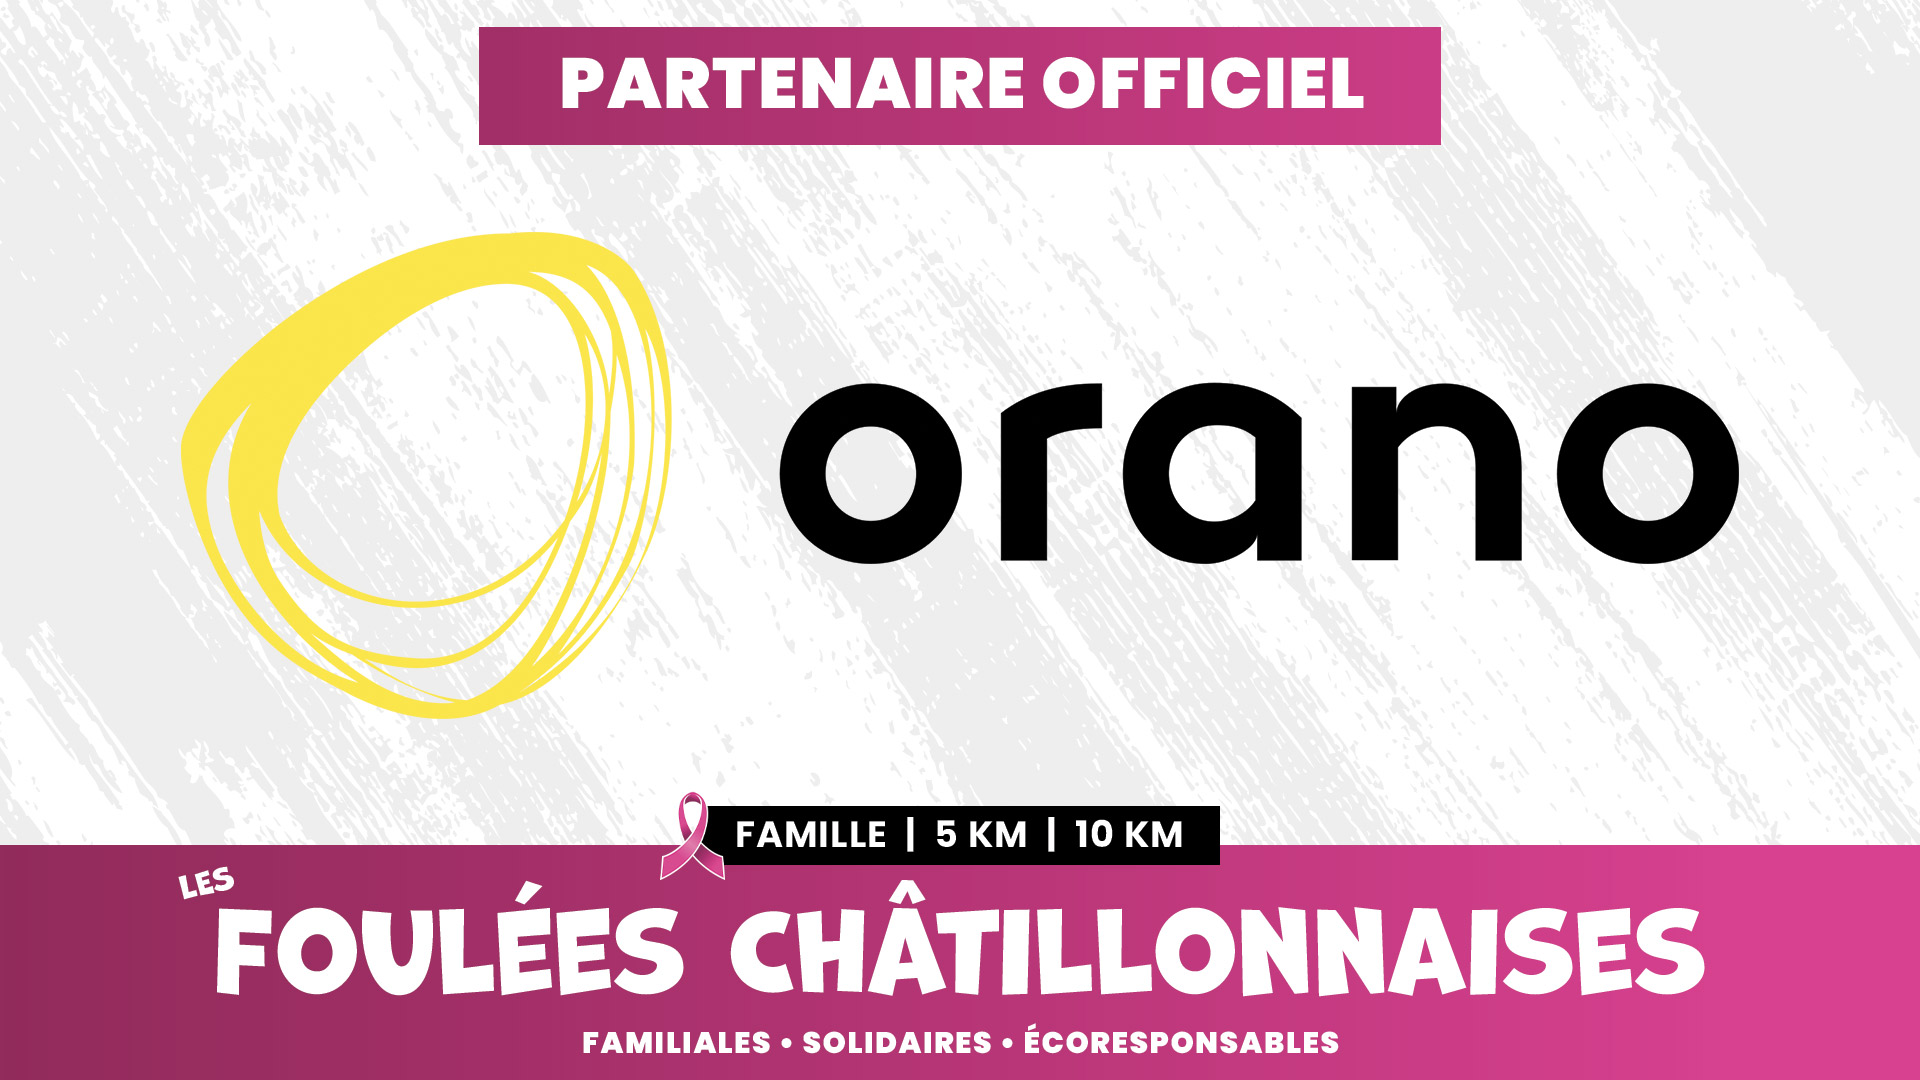 Orano - Partenaire Officiel des Foulées Châtillonnaises